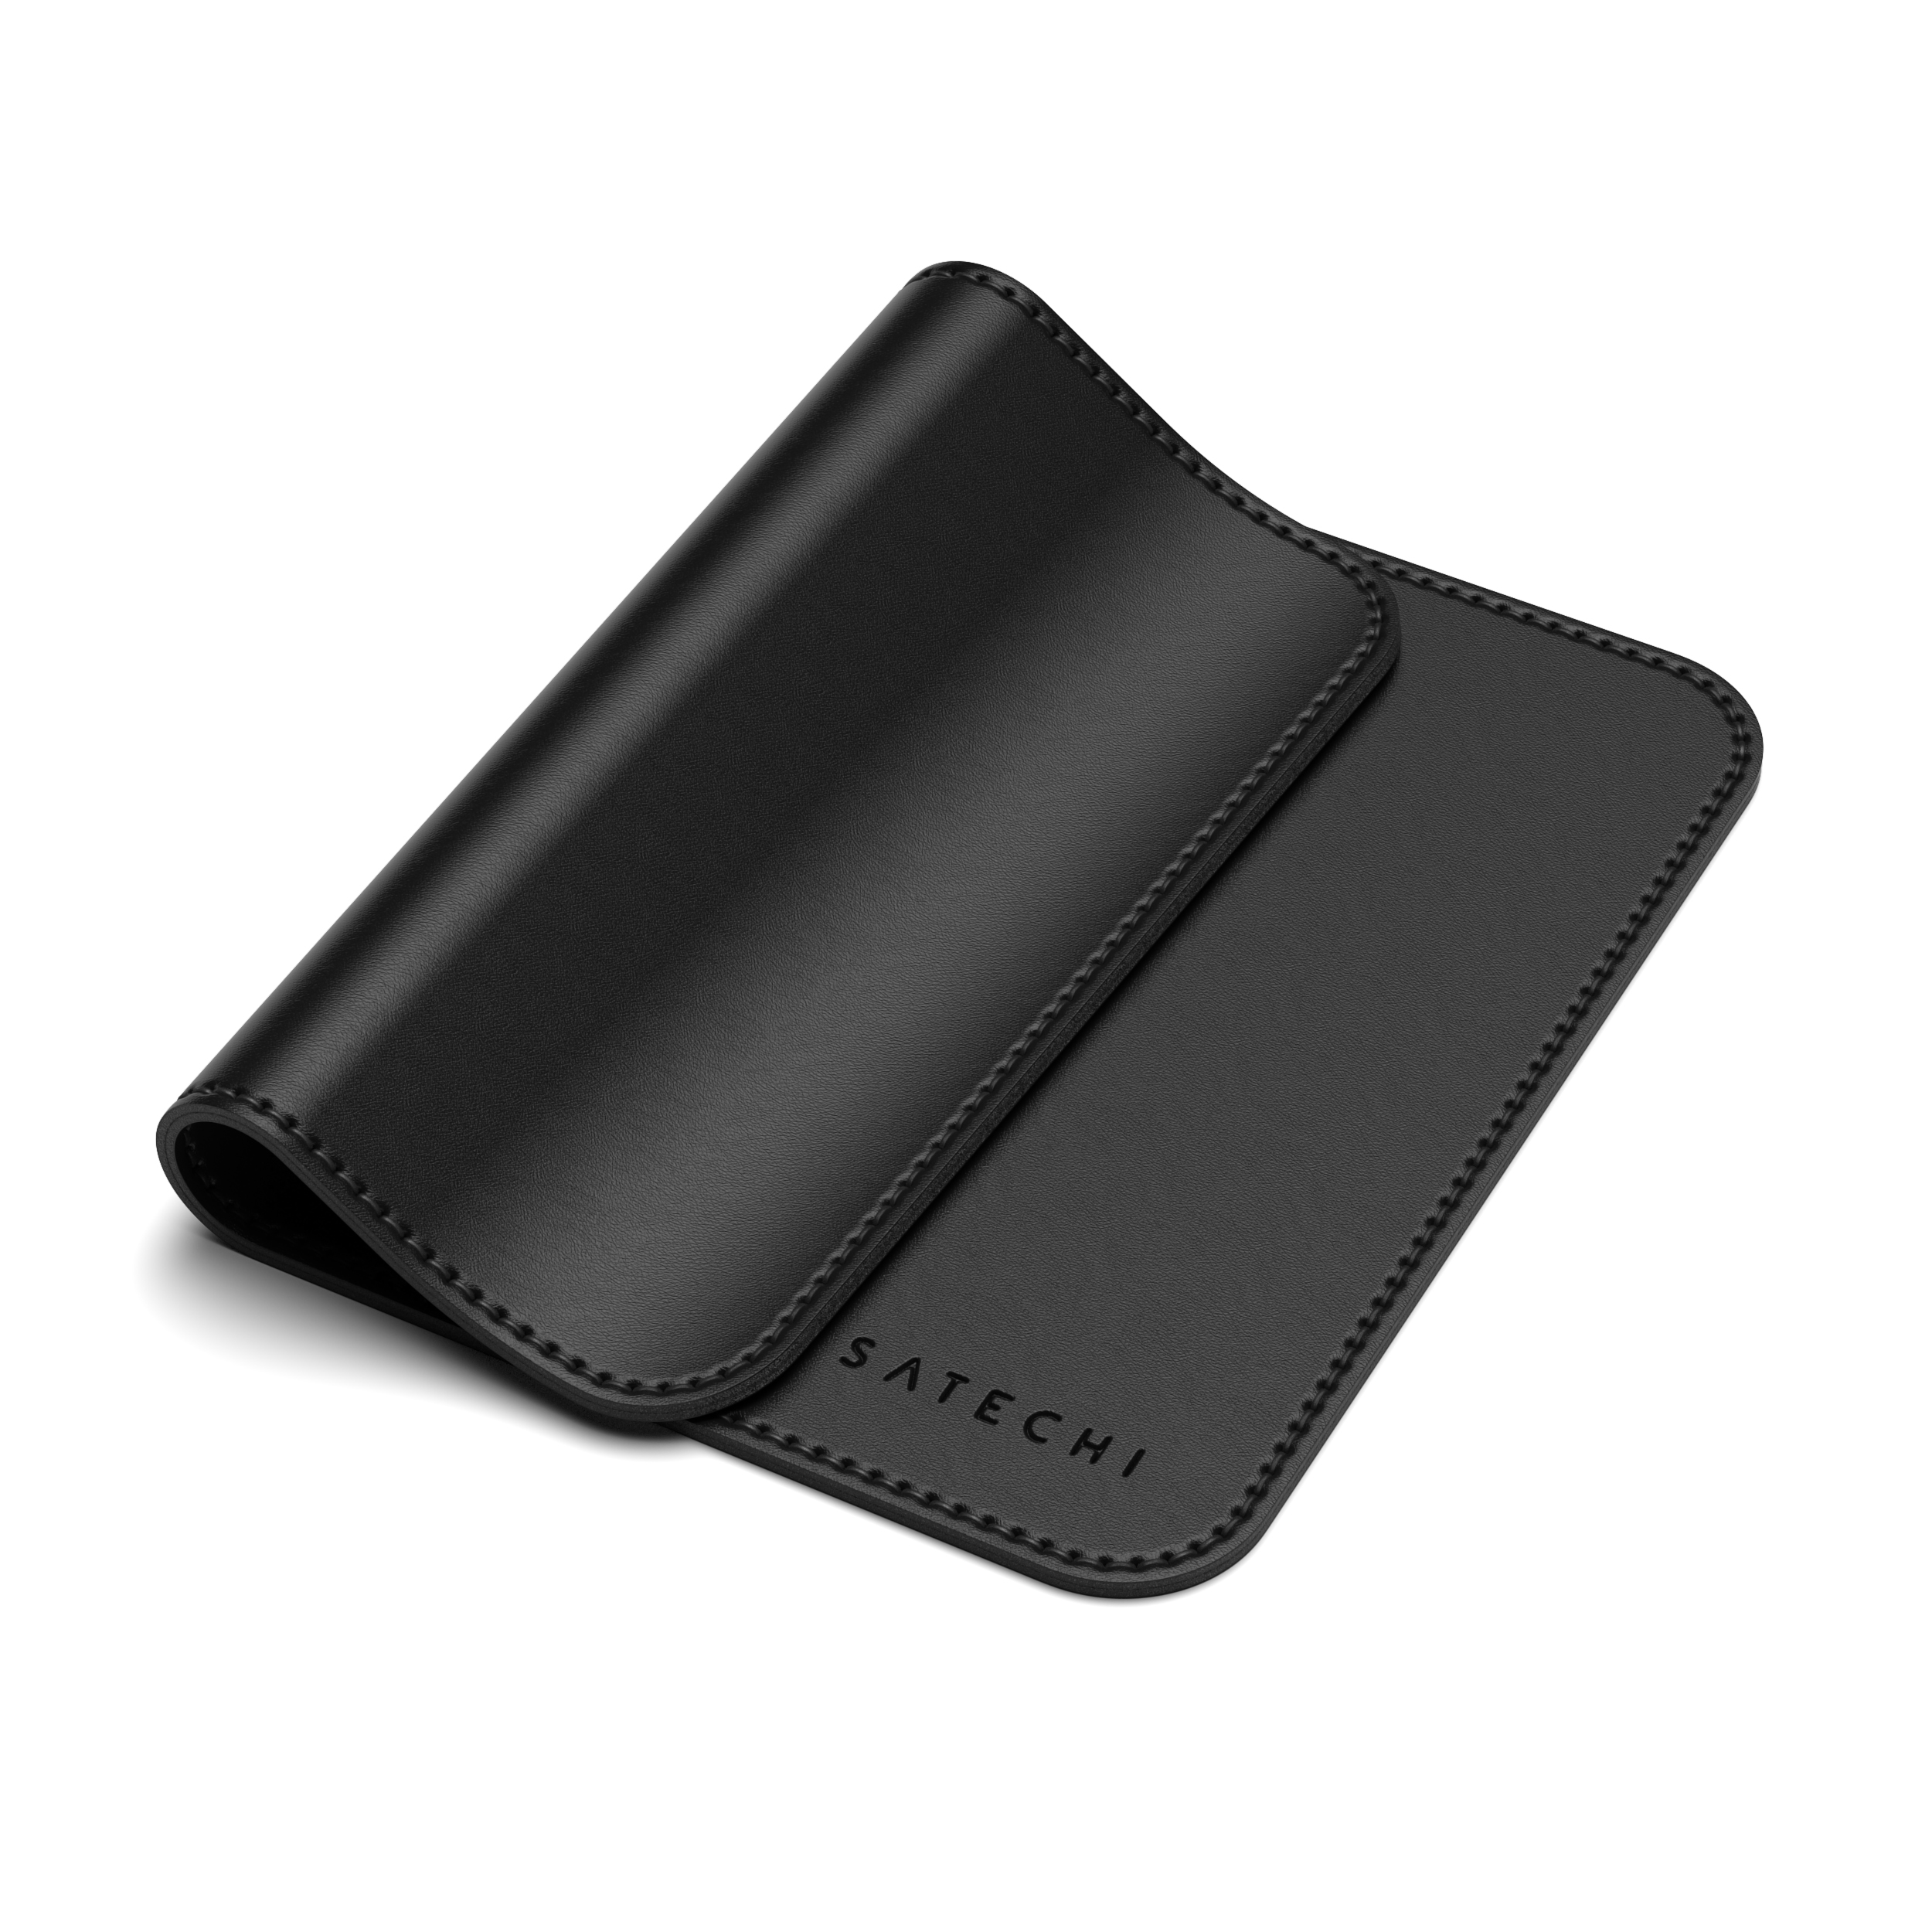 SATECHI Eco-Leather Mouse Pad - Black cm (19 x 24,89 cm) Mousepad